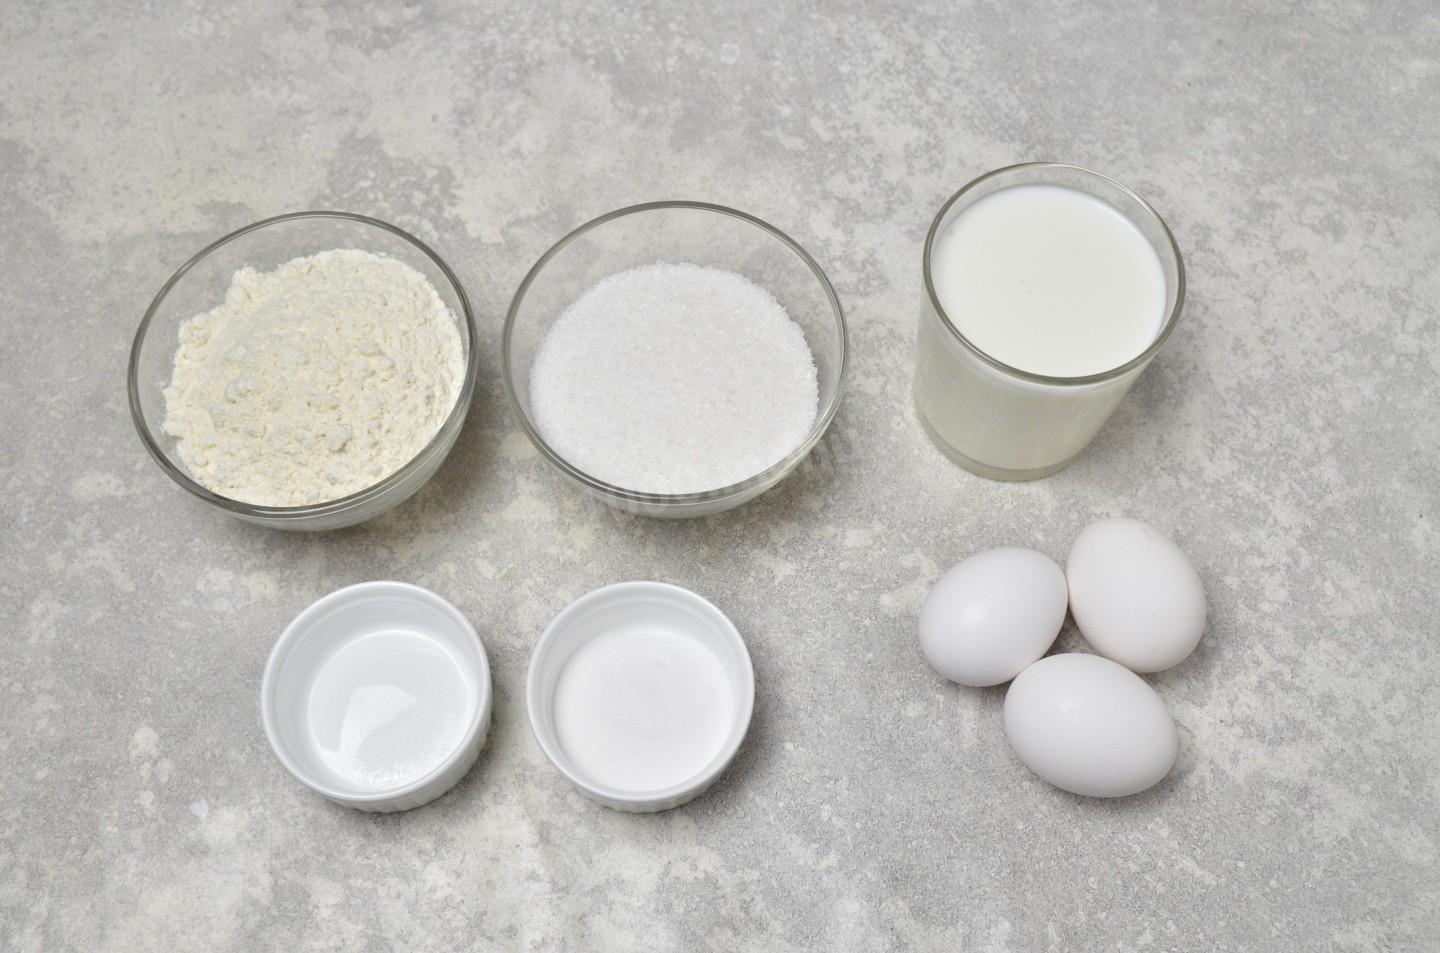 Кефир сахар мука рецепт. Мука сода яйца и сахар. Кефир классический. Кефир и яйцо рецепт. Кефир яйца мука сахар что приготовить.